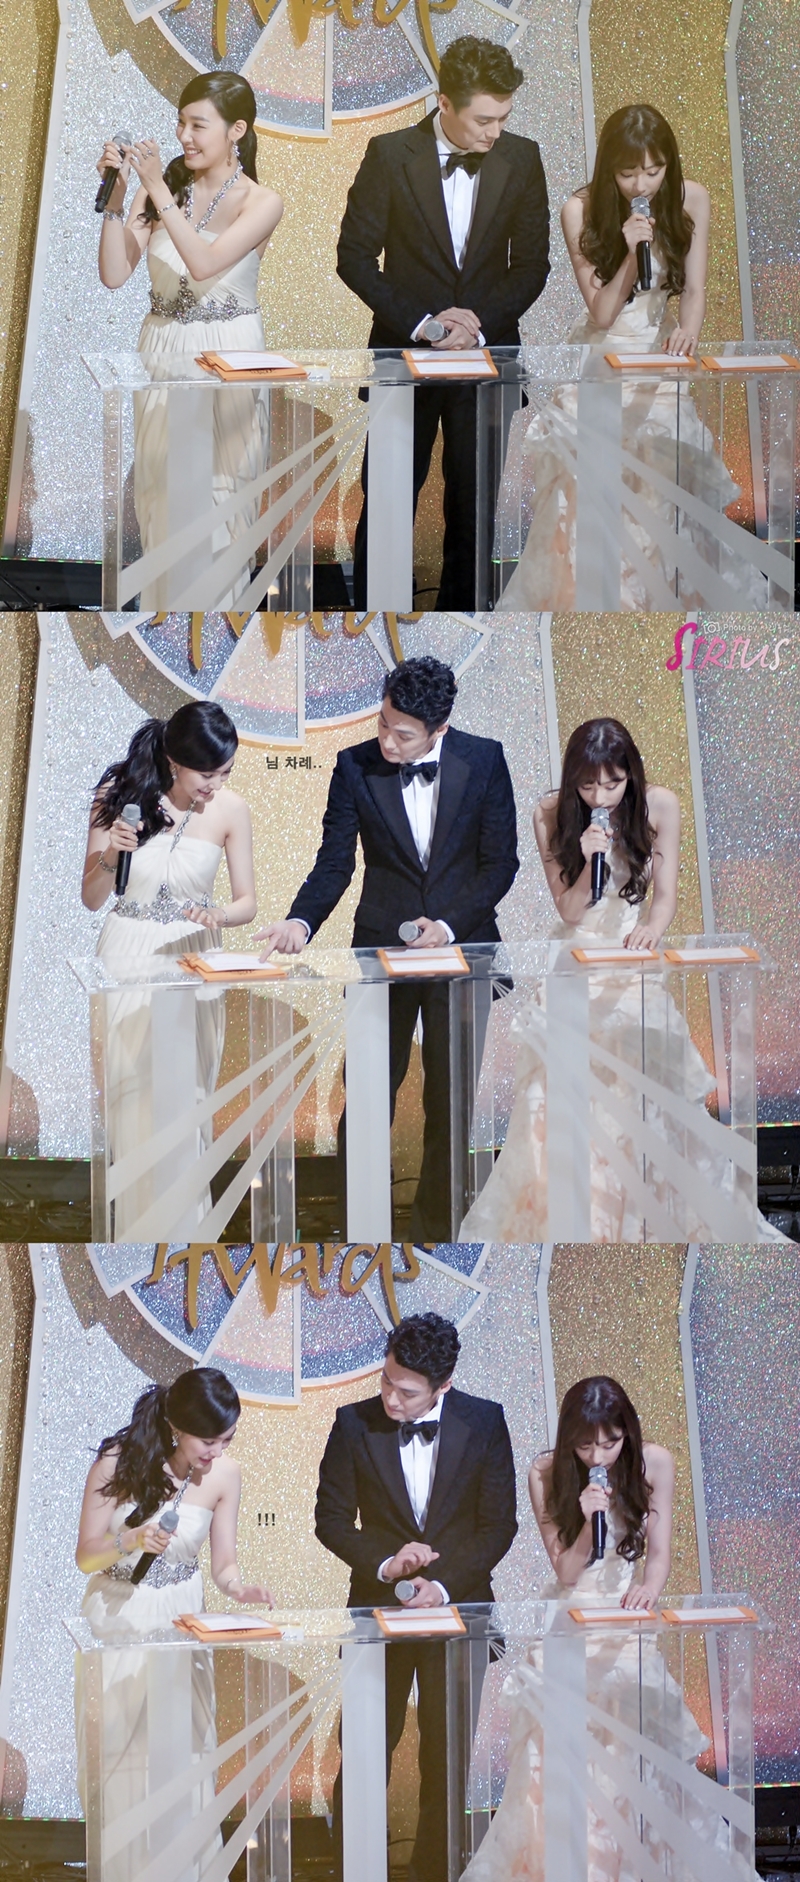 [PIC][16-01-2014]Hình ảnh từ "JTBC 28th Golden Disk Award" của MC TaeYeon và Tiffany vào tối nay + SNSD giành chiến thắng với 2 giải thưởng 227F824D52D805E02ABE5E